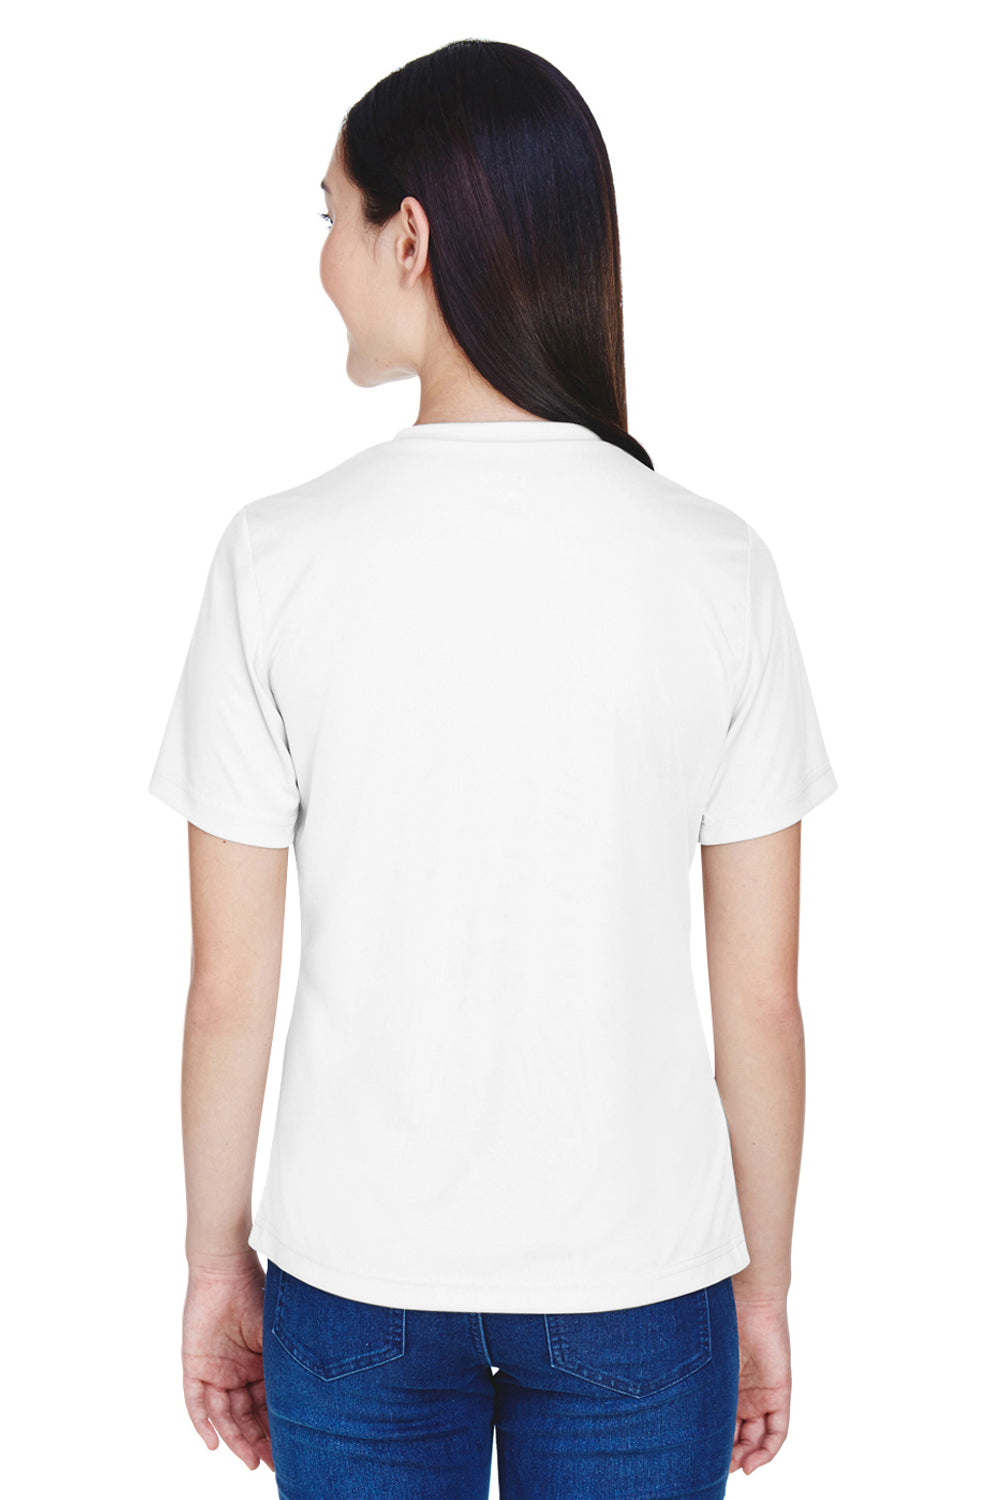 Team 365 TT11W Womens Zone Performance Moisture Wicking Short Sleeve V-Neck T-Shirt White Back